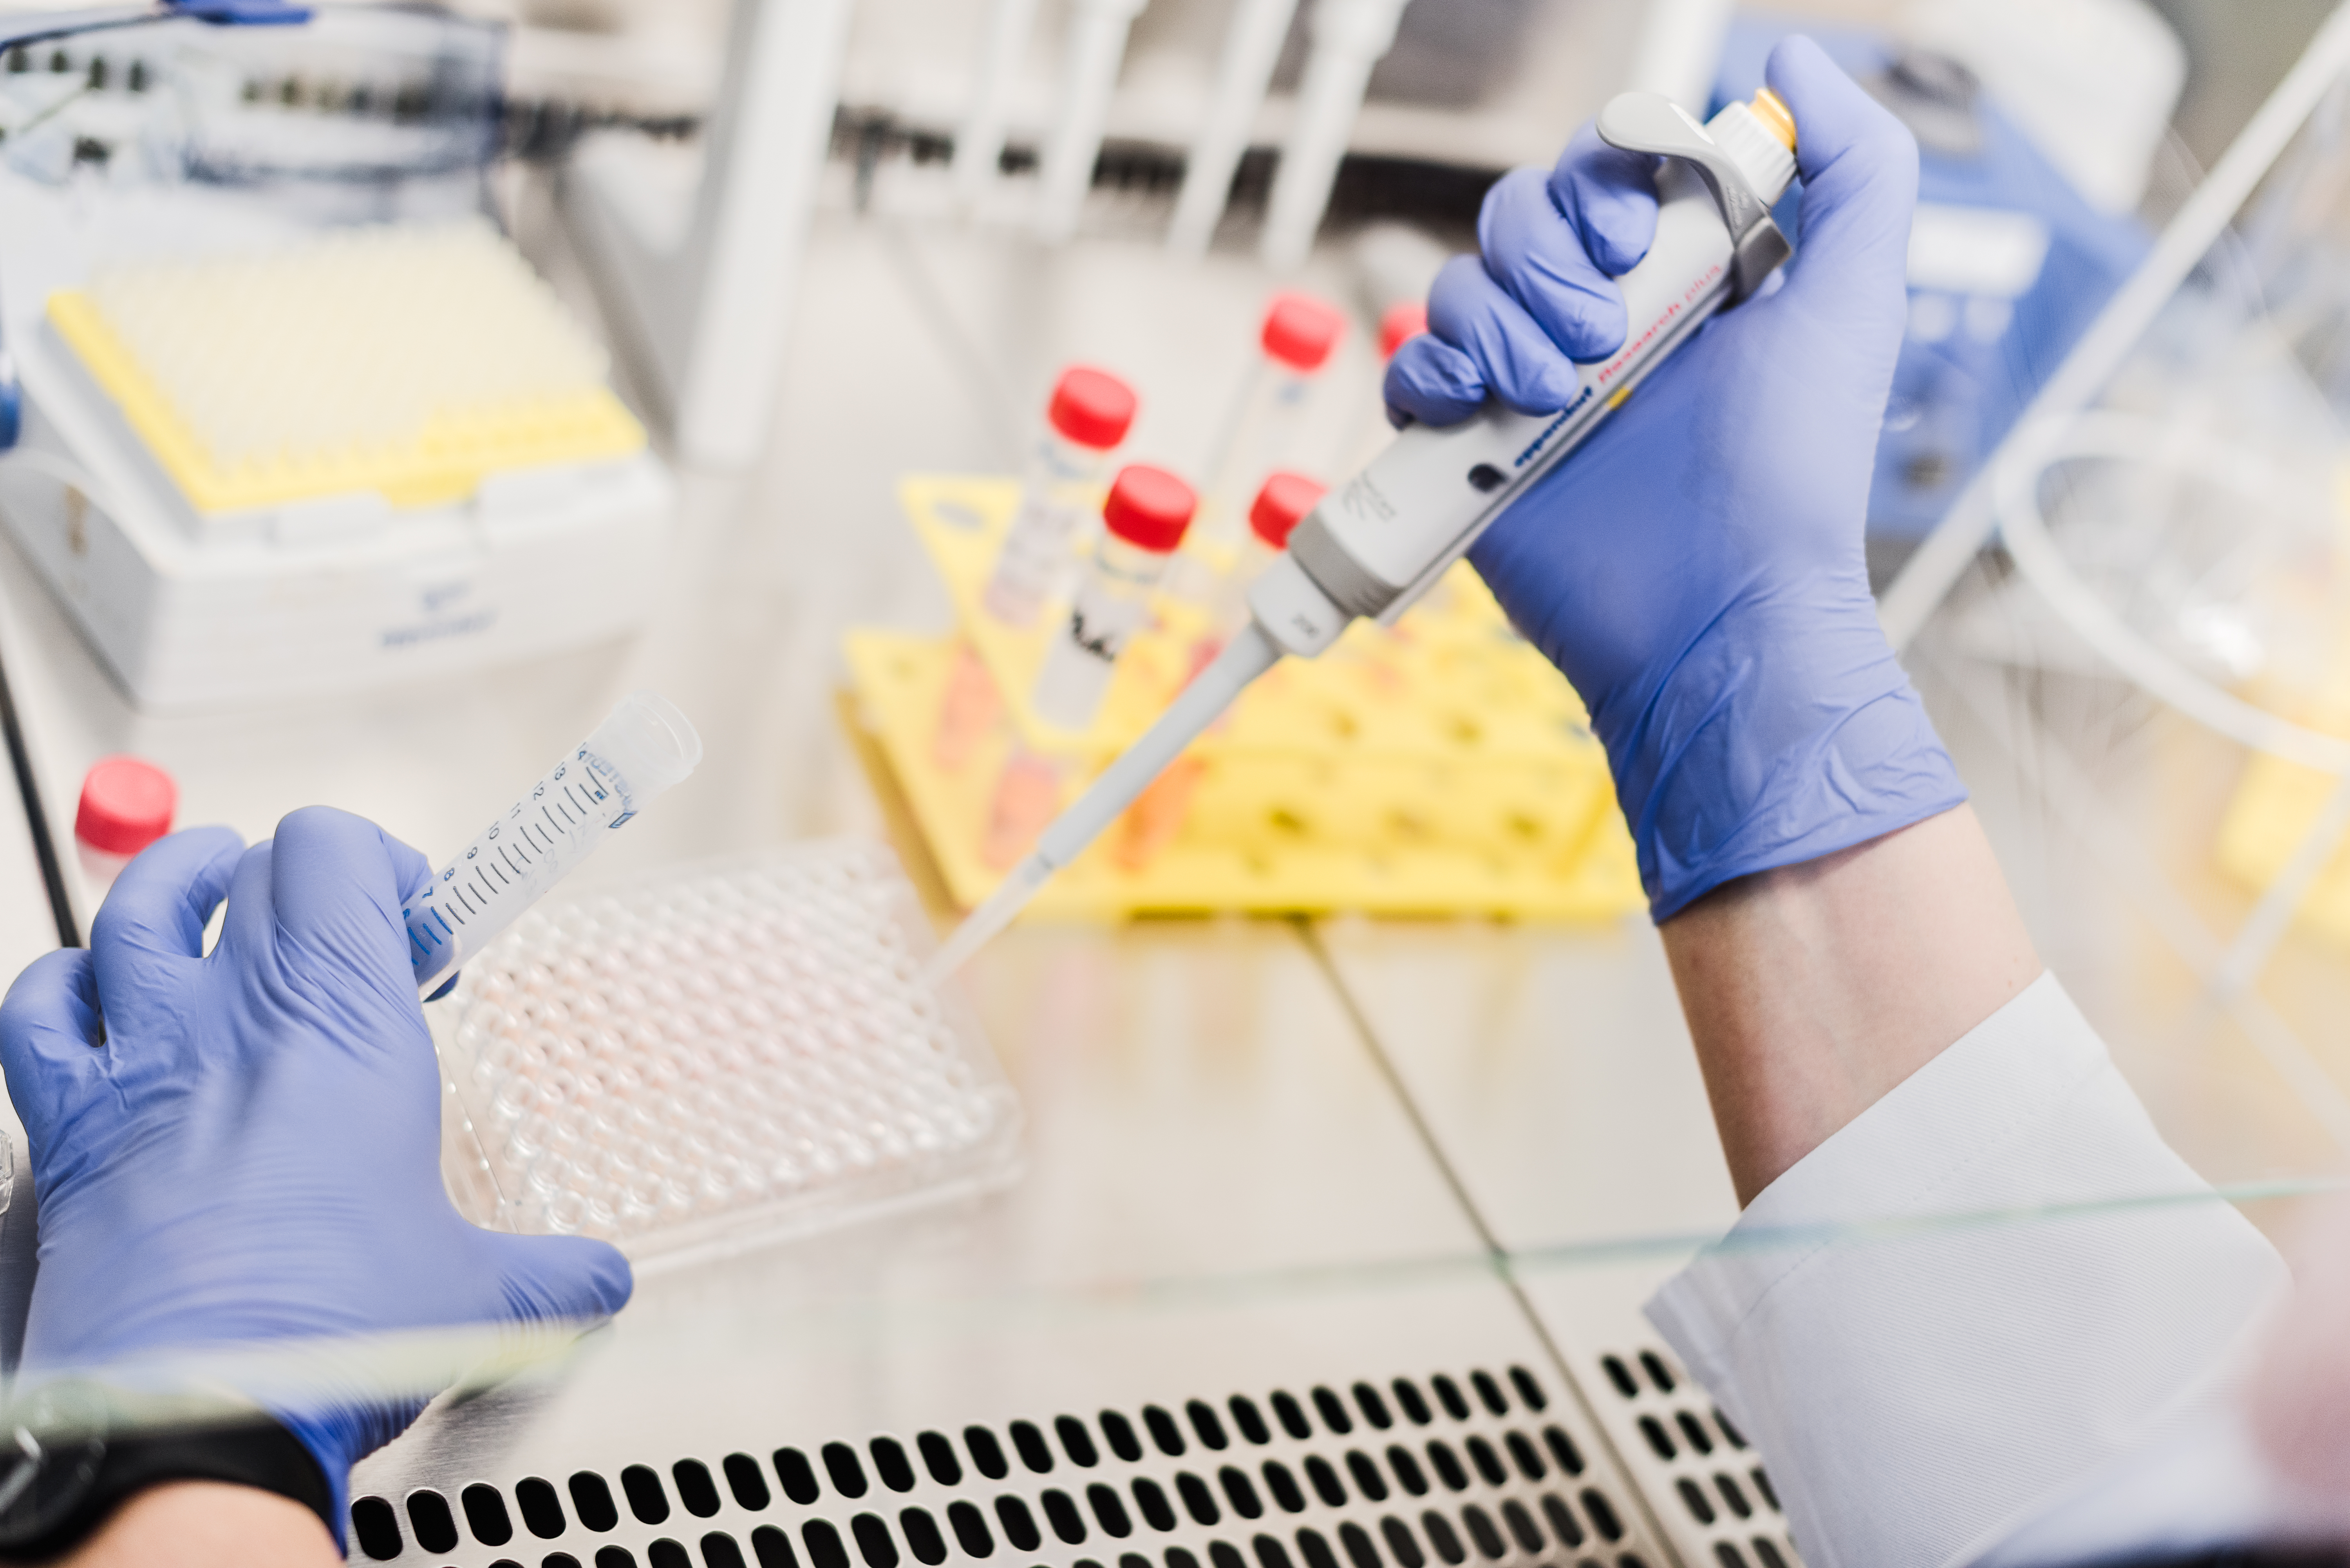 Das Fraunhofer ITEM bietet wissenschaftliche Beratung zum optimalen Studiendesign und Hilfestellung bei der Auswahl der Sputum-Biomarker.